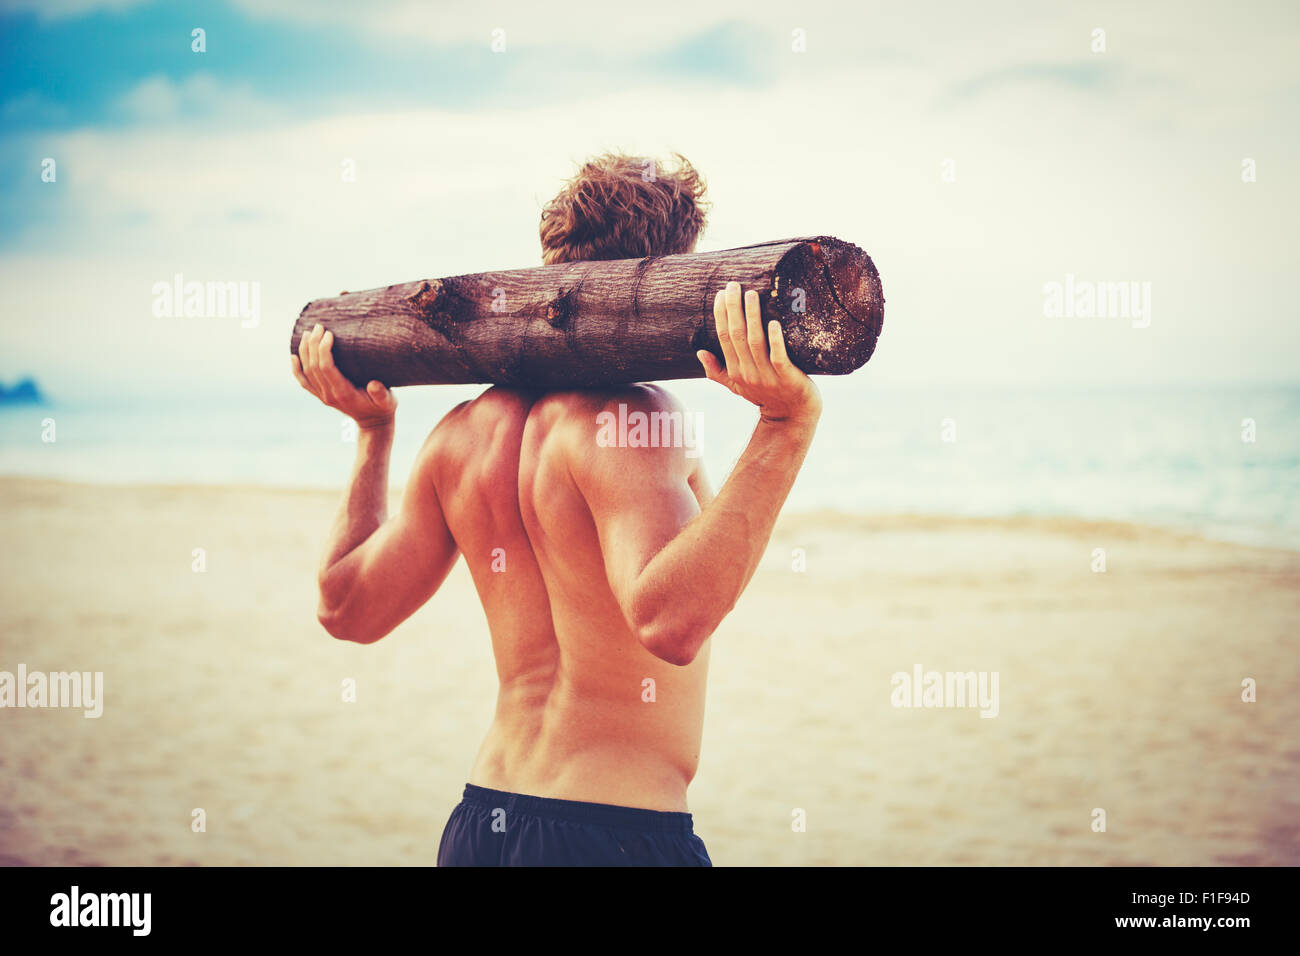 Plage de CrossFit entraînement. L'exercice de l'athlète masculin en plein air sur la plage avec tree log. Condition physique et mode de vie sain. Banque D'Images